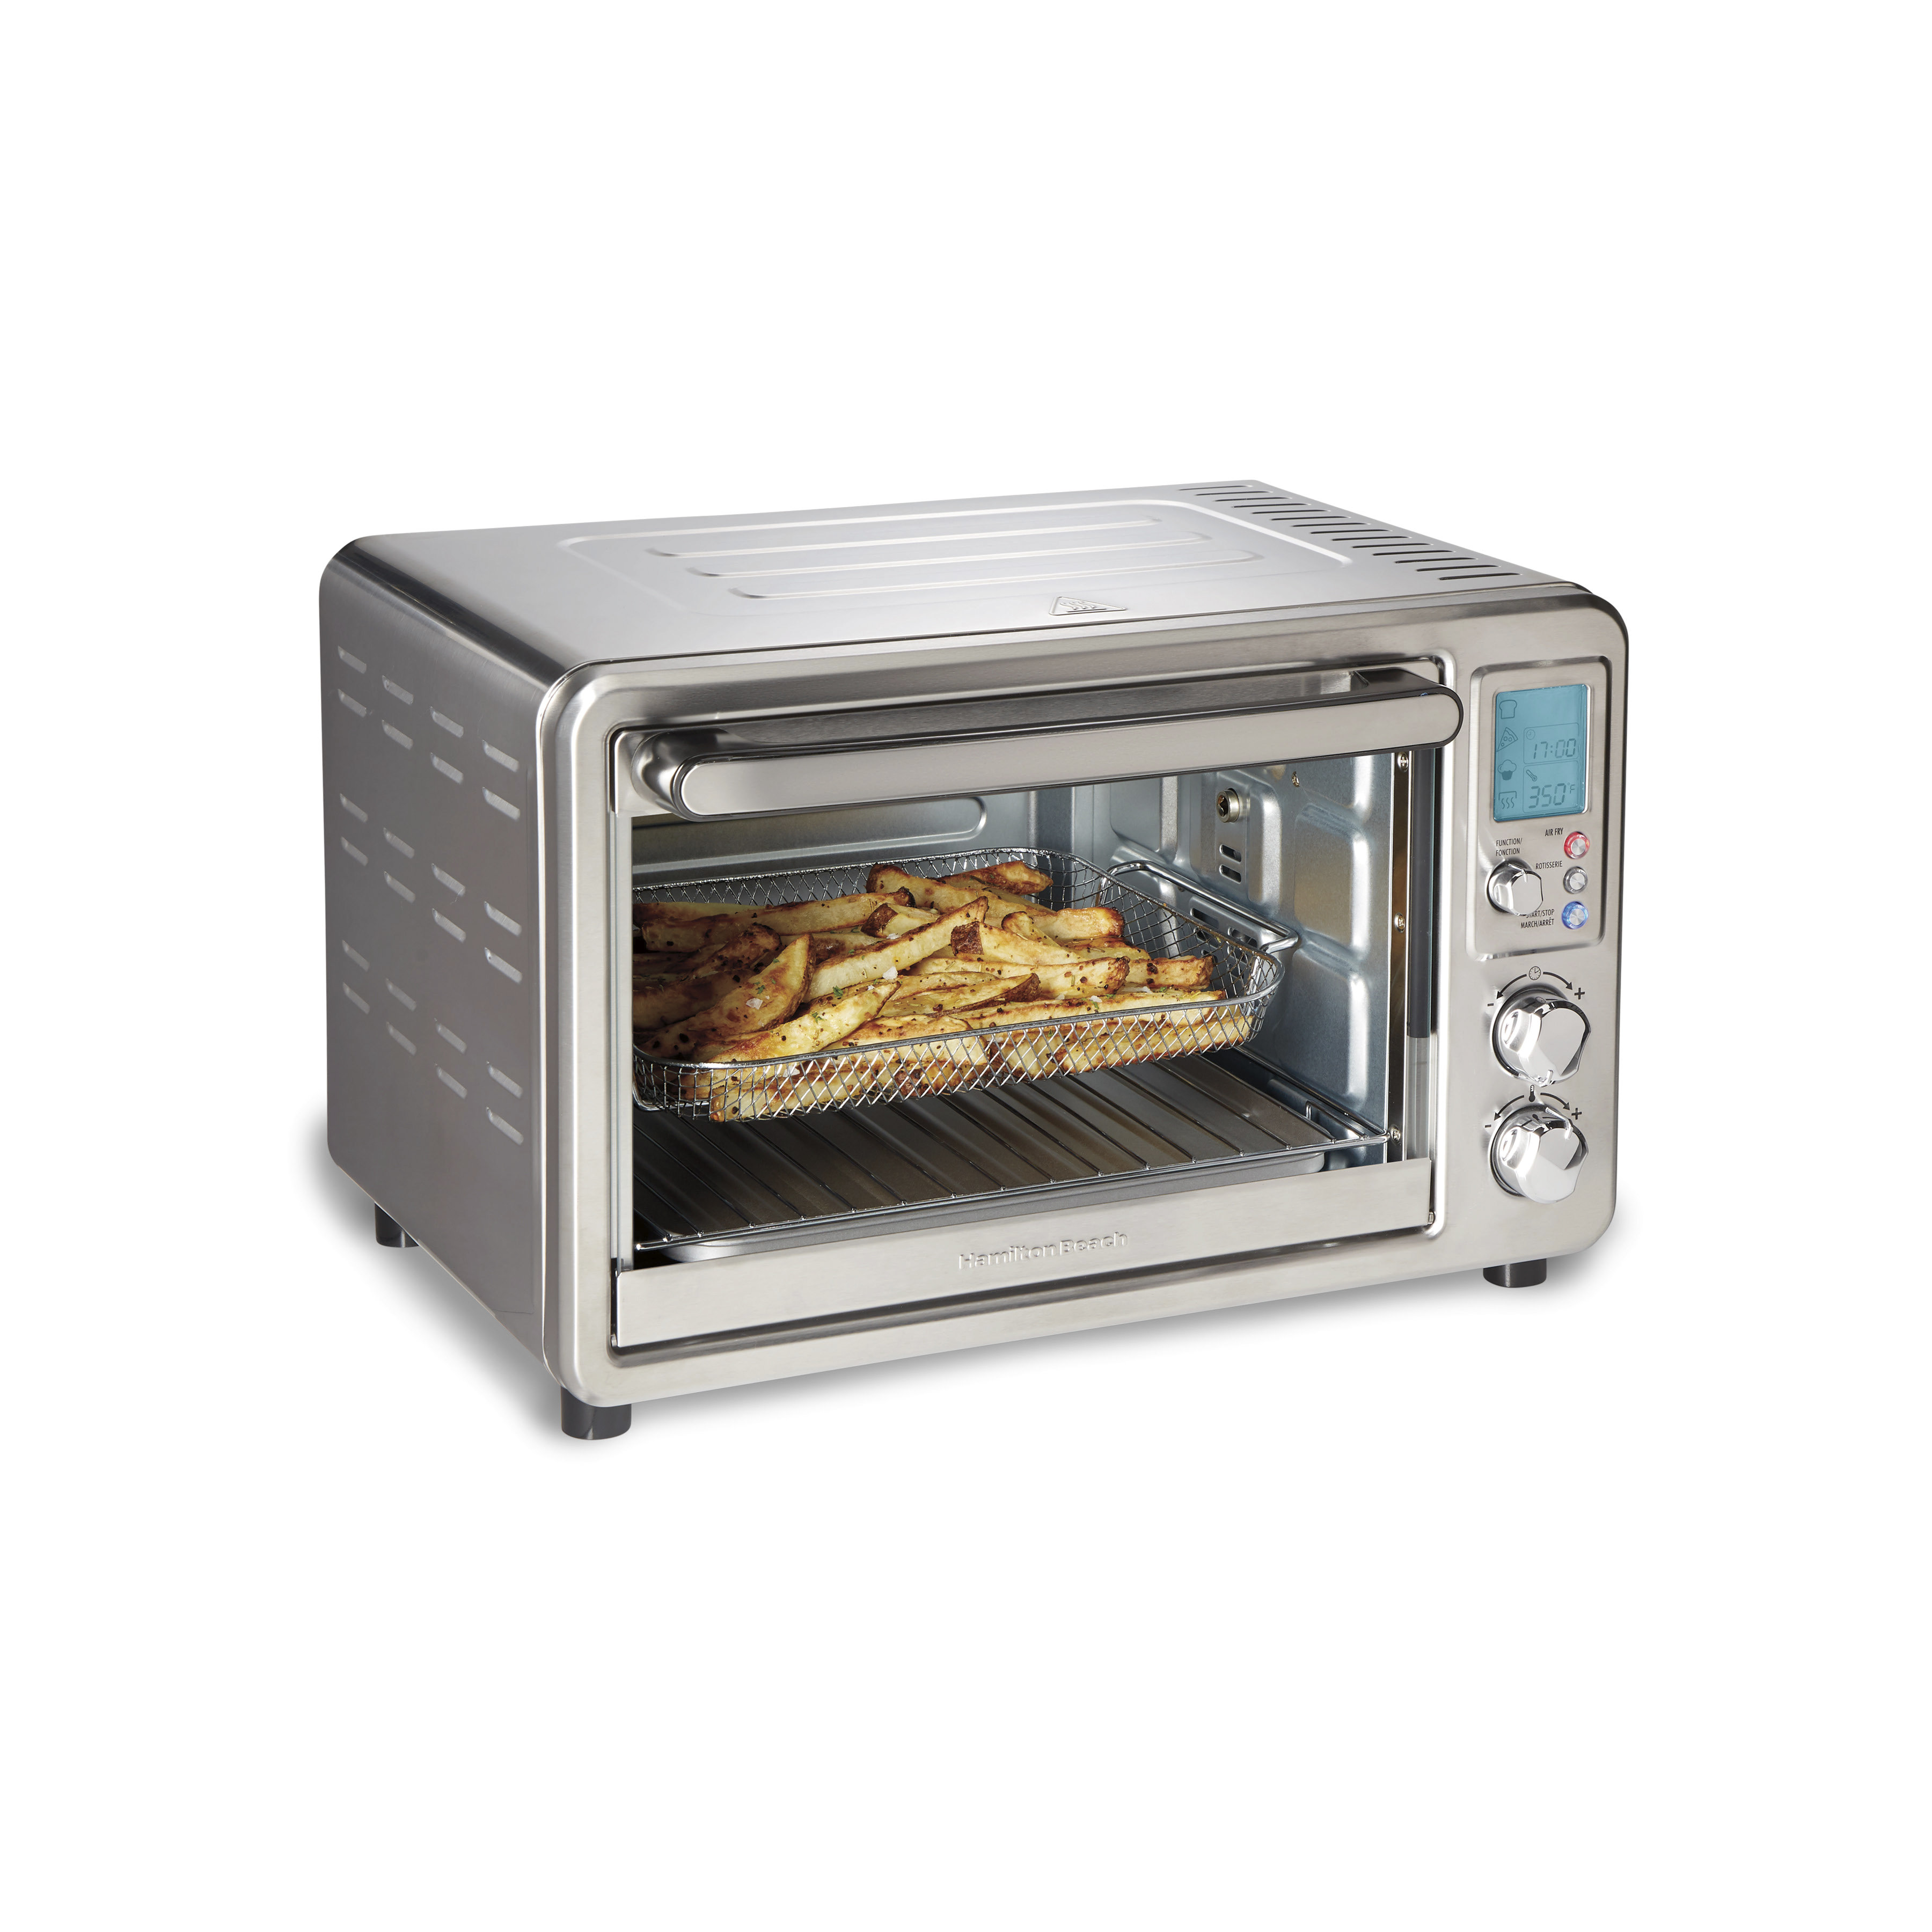 https://assets.wfcdn.com/im/87722468/compr-r85/2378/237890555/hamilton-beach-sure-crisp-air-fryer-toaster-oven.jpg